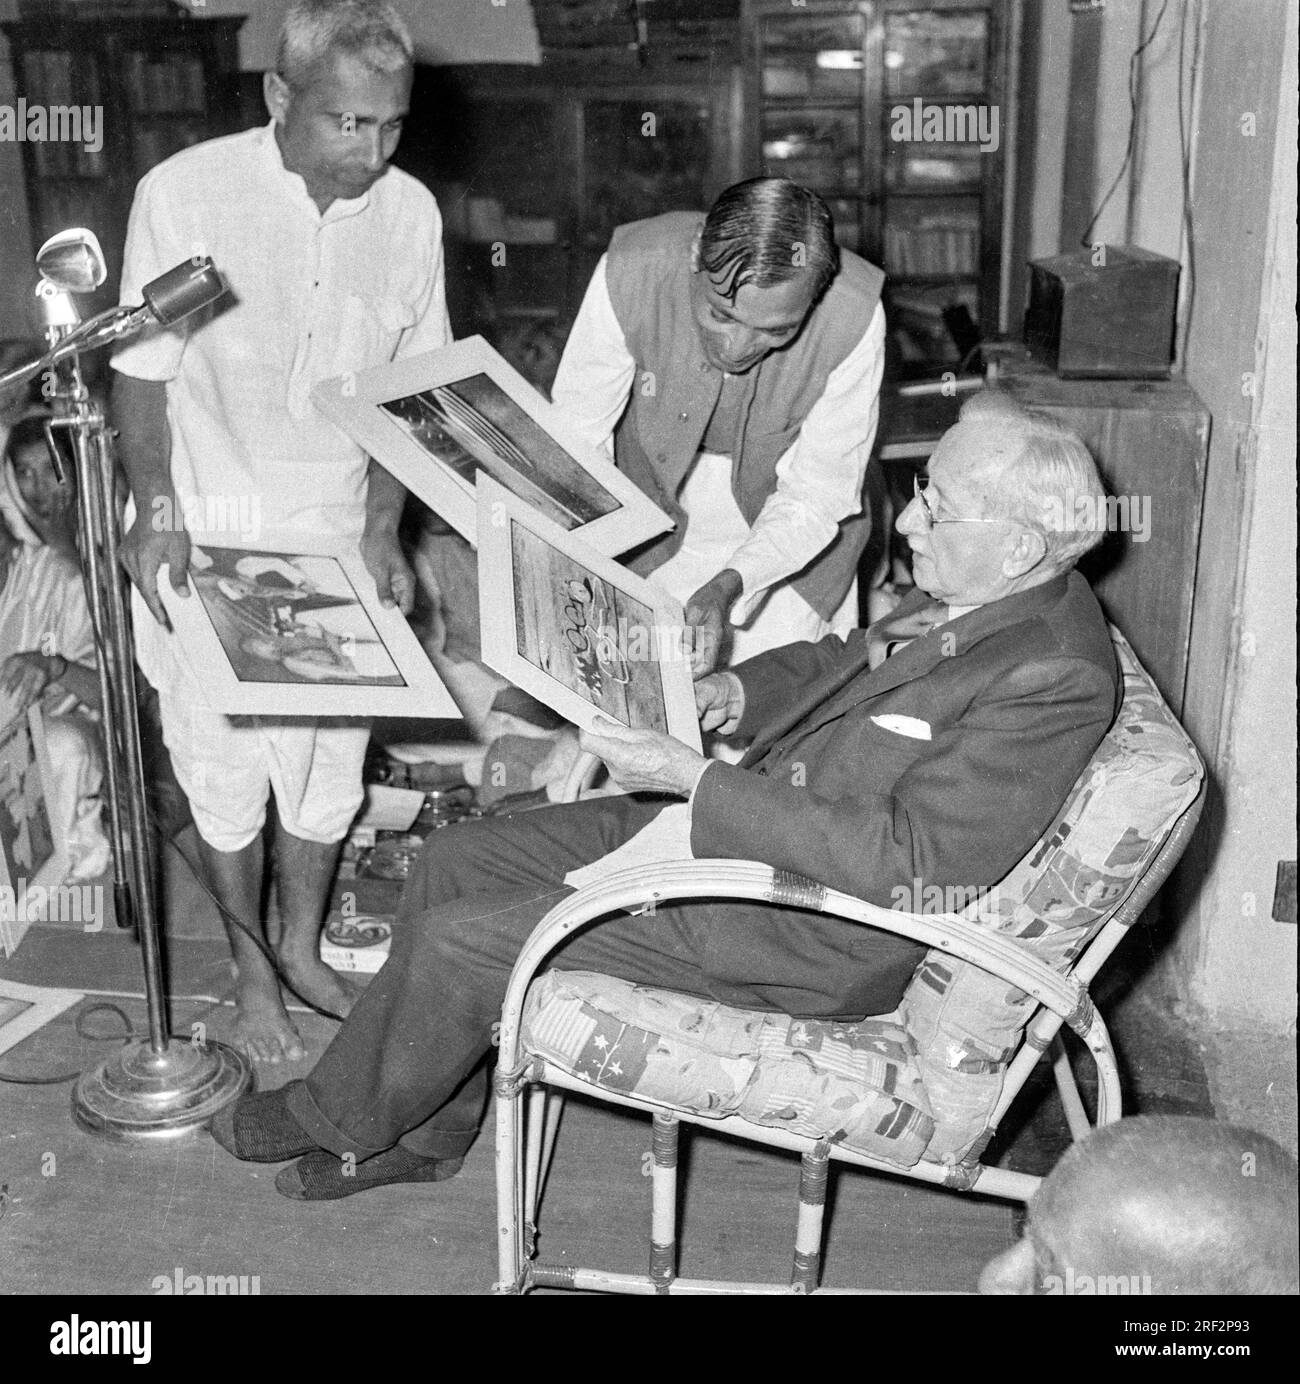 Vieille photo vintage en noir et blanc des années 1900 de l'acheteur indien photographe monté tirages Inde des années 1950 Banque D'Images